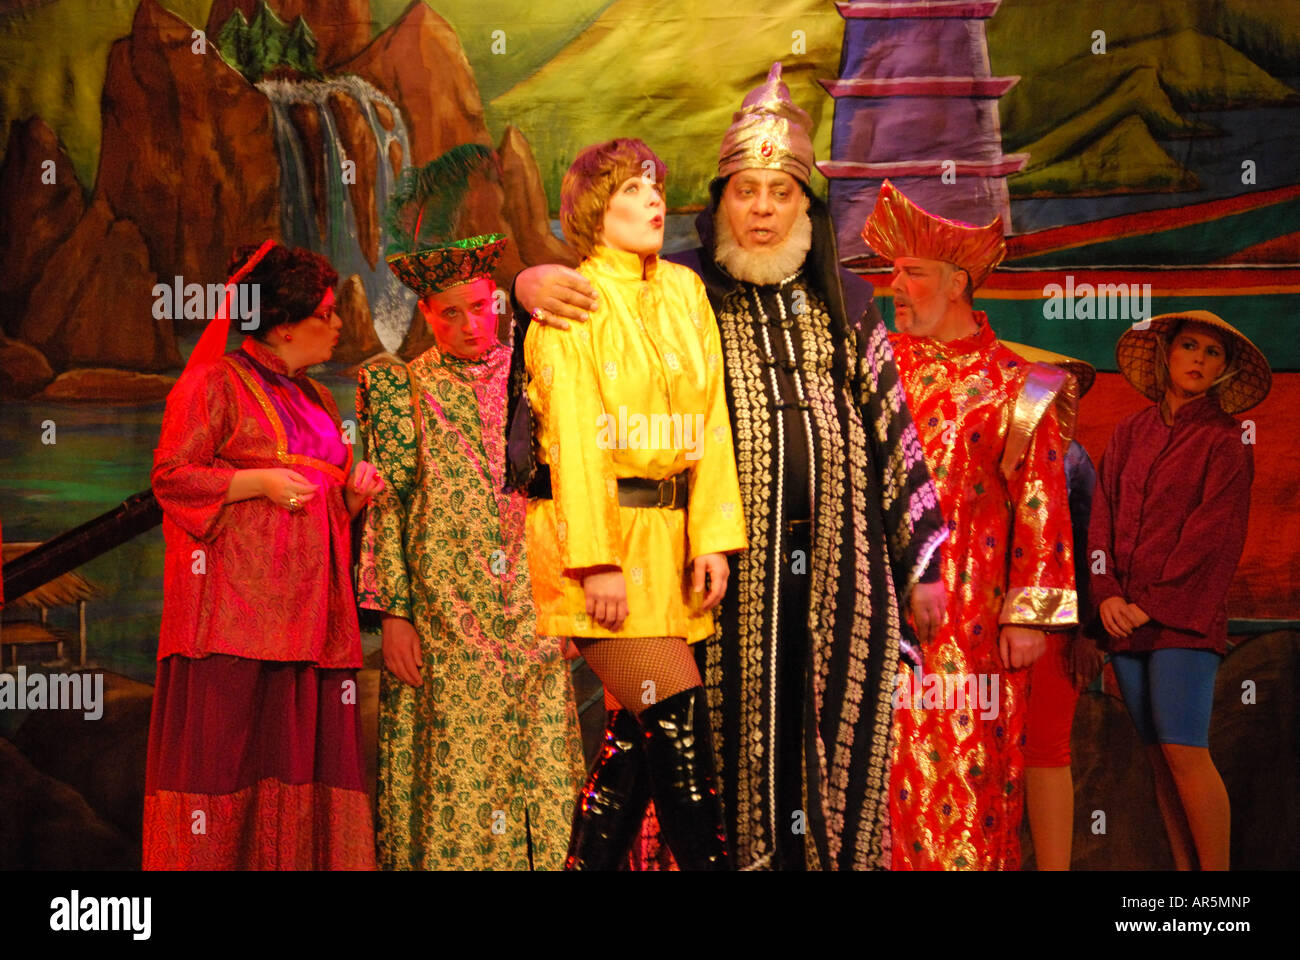 "Aladdin" Pantomime spielen, Concorde Club, Middlesex, England, Vereinigtes Königreich Stockfoto